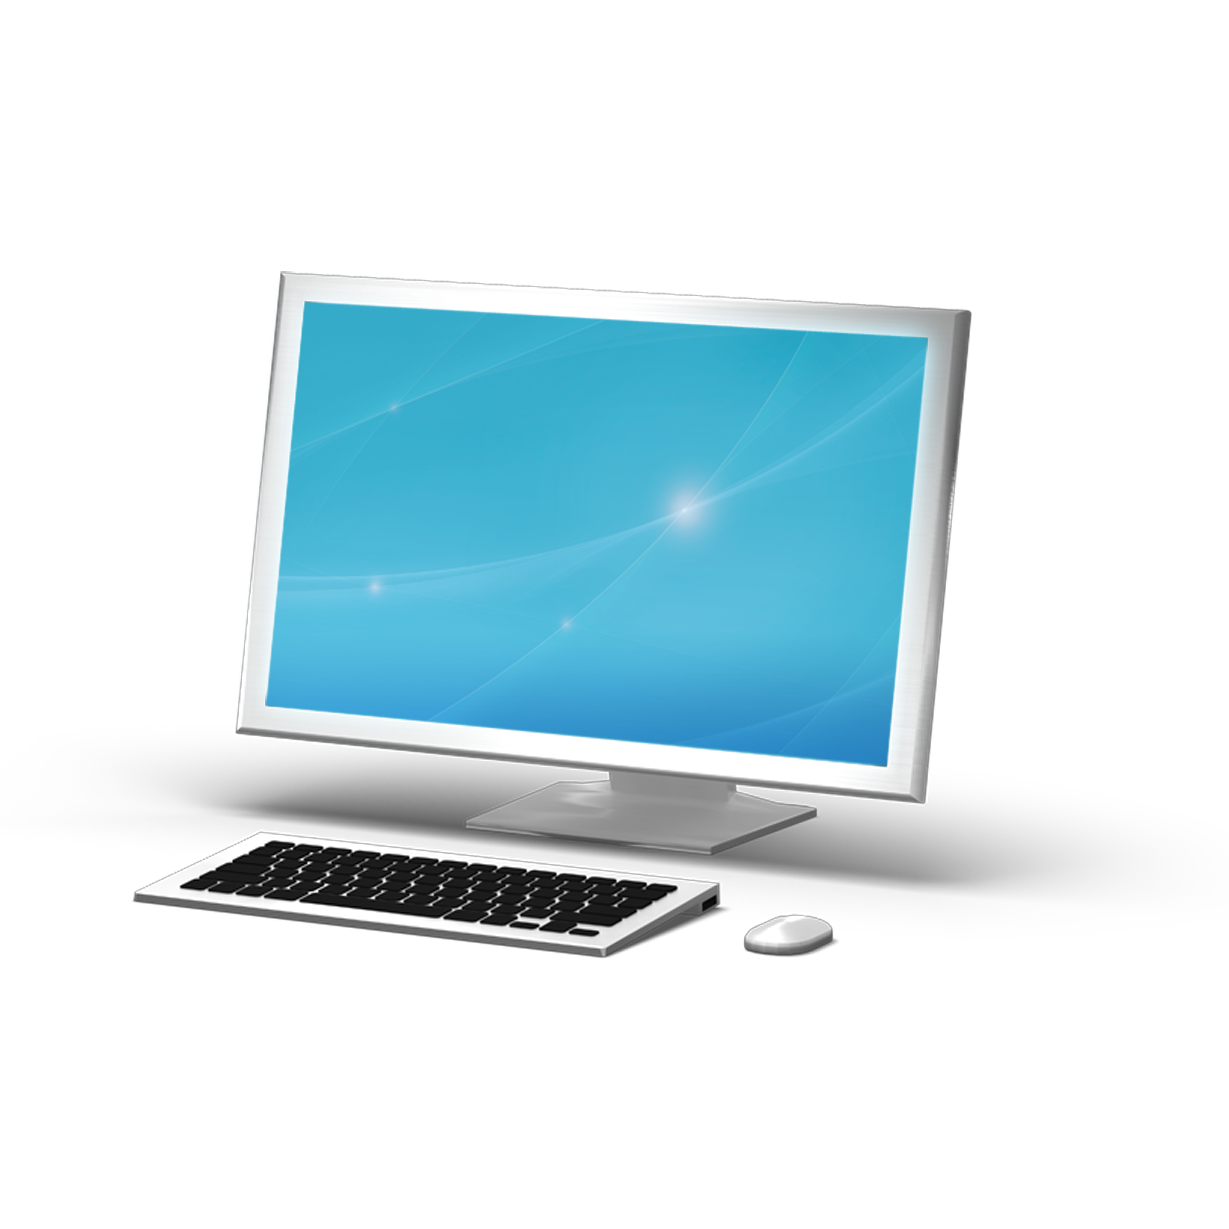 Immagine PNG gratuita per PC del computer